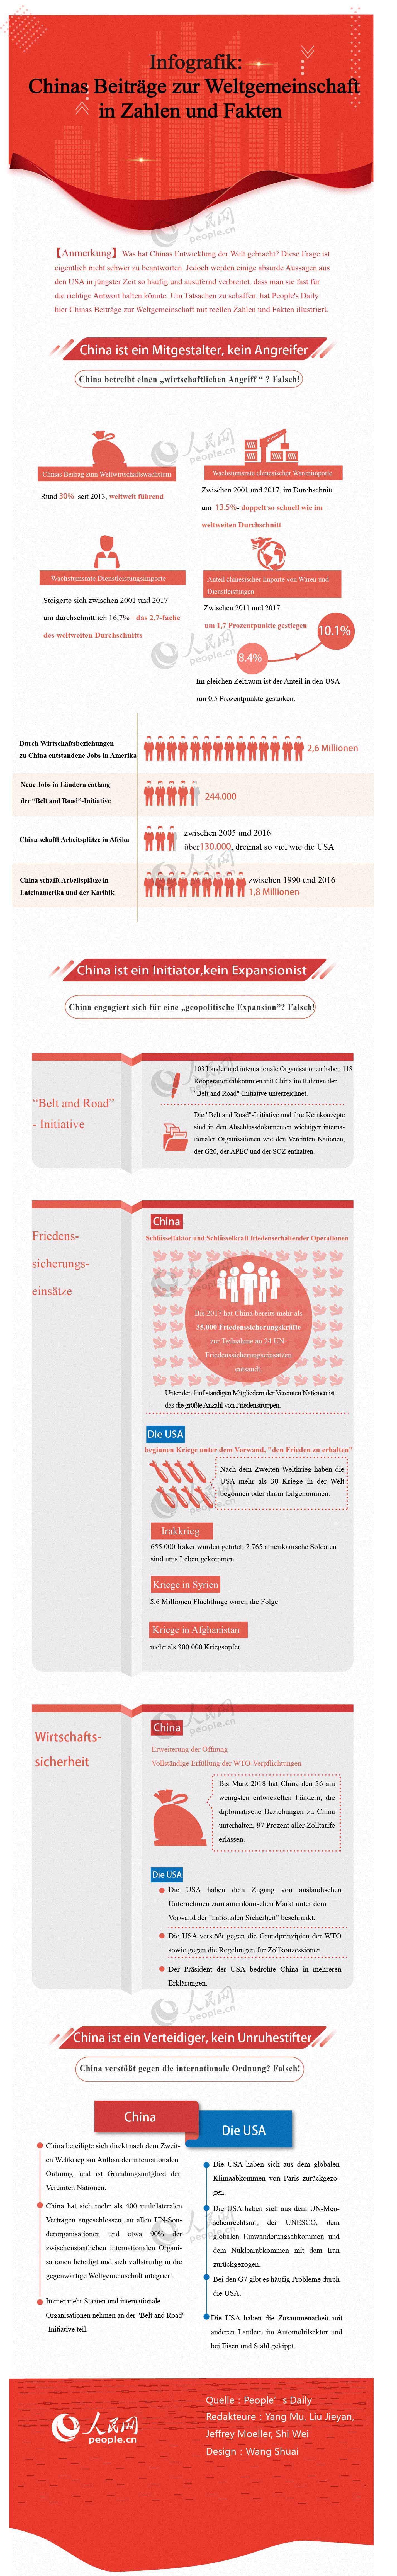 Infografik: Chinas Beiträge zur Weltgemeinschaft in Zahlen und Fakten